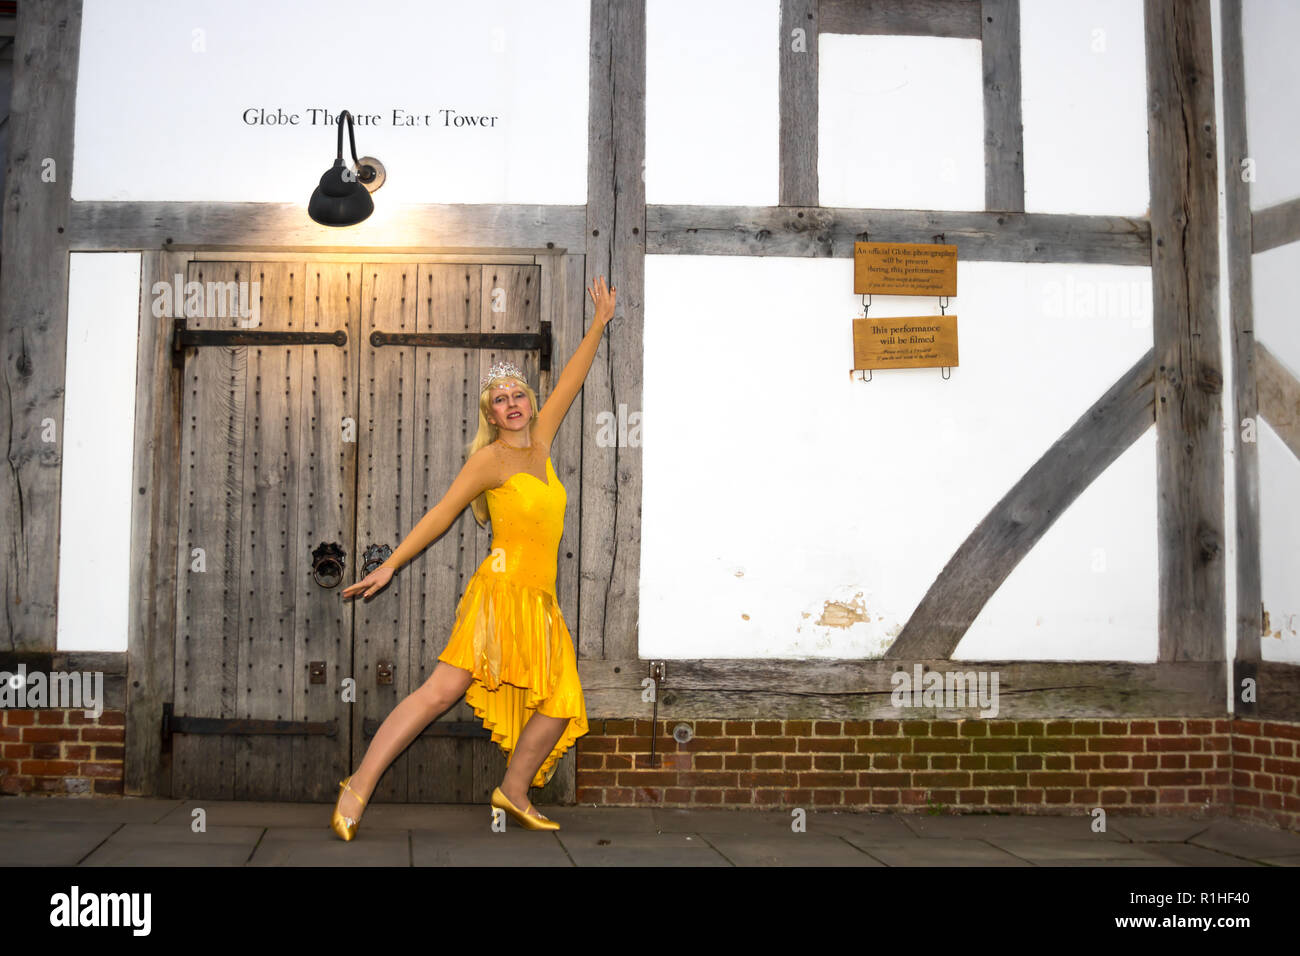 Actrice, chanteuse et danseuse Melody Burke décrit au Globe Theatre de Londres, portant son costume de danse avant un spectacle. Banque D'Images